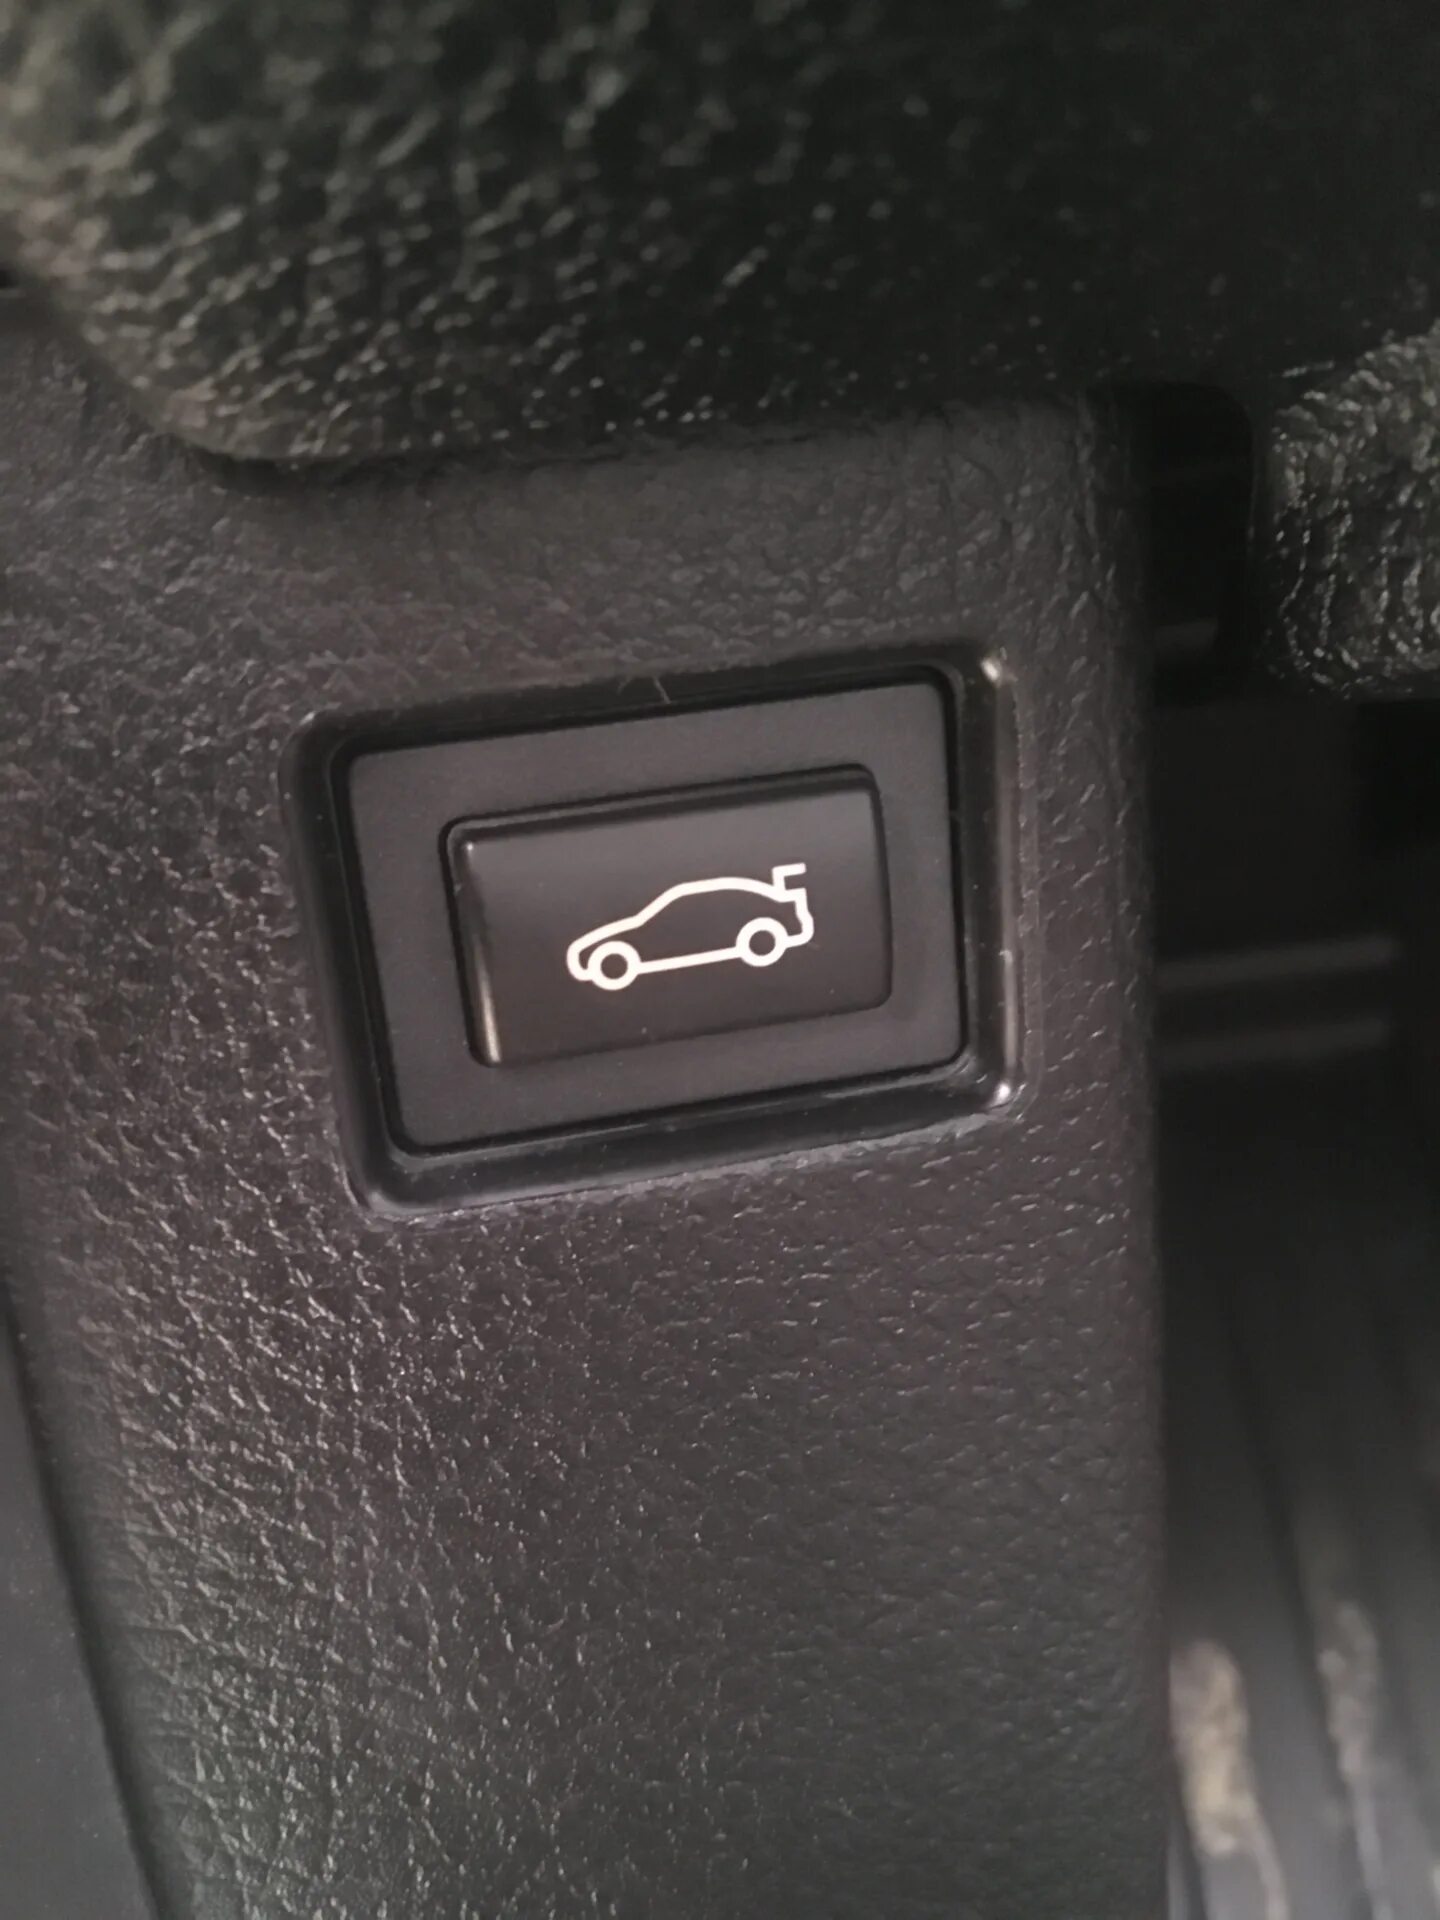 Кнопкой открыть в новом. VW t6 кнопка открывания багажника. Кнопка открытия багажника Volkswagen t6. Кнопка открывания багажника из салона VW t6. Кнопка открывания багажника Приора 2 квадратная.